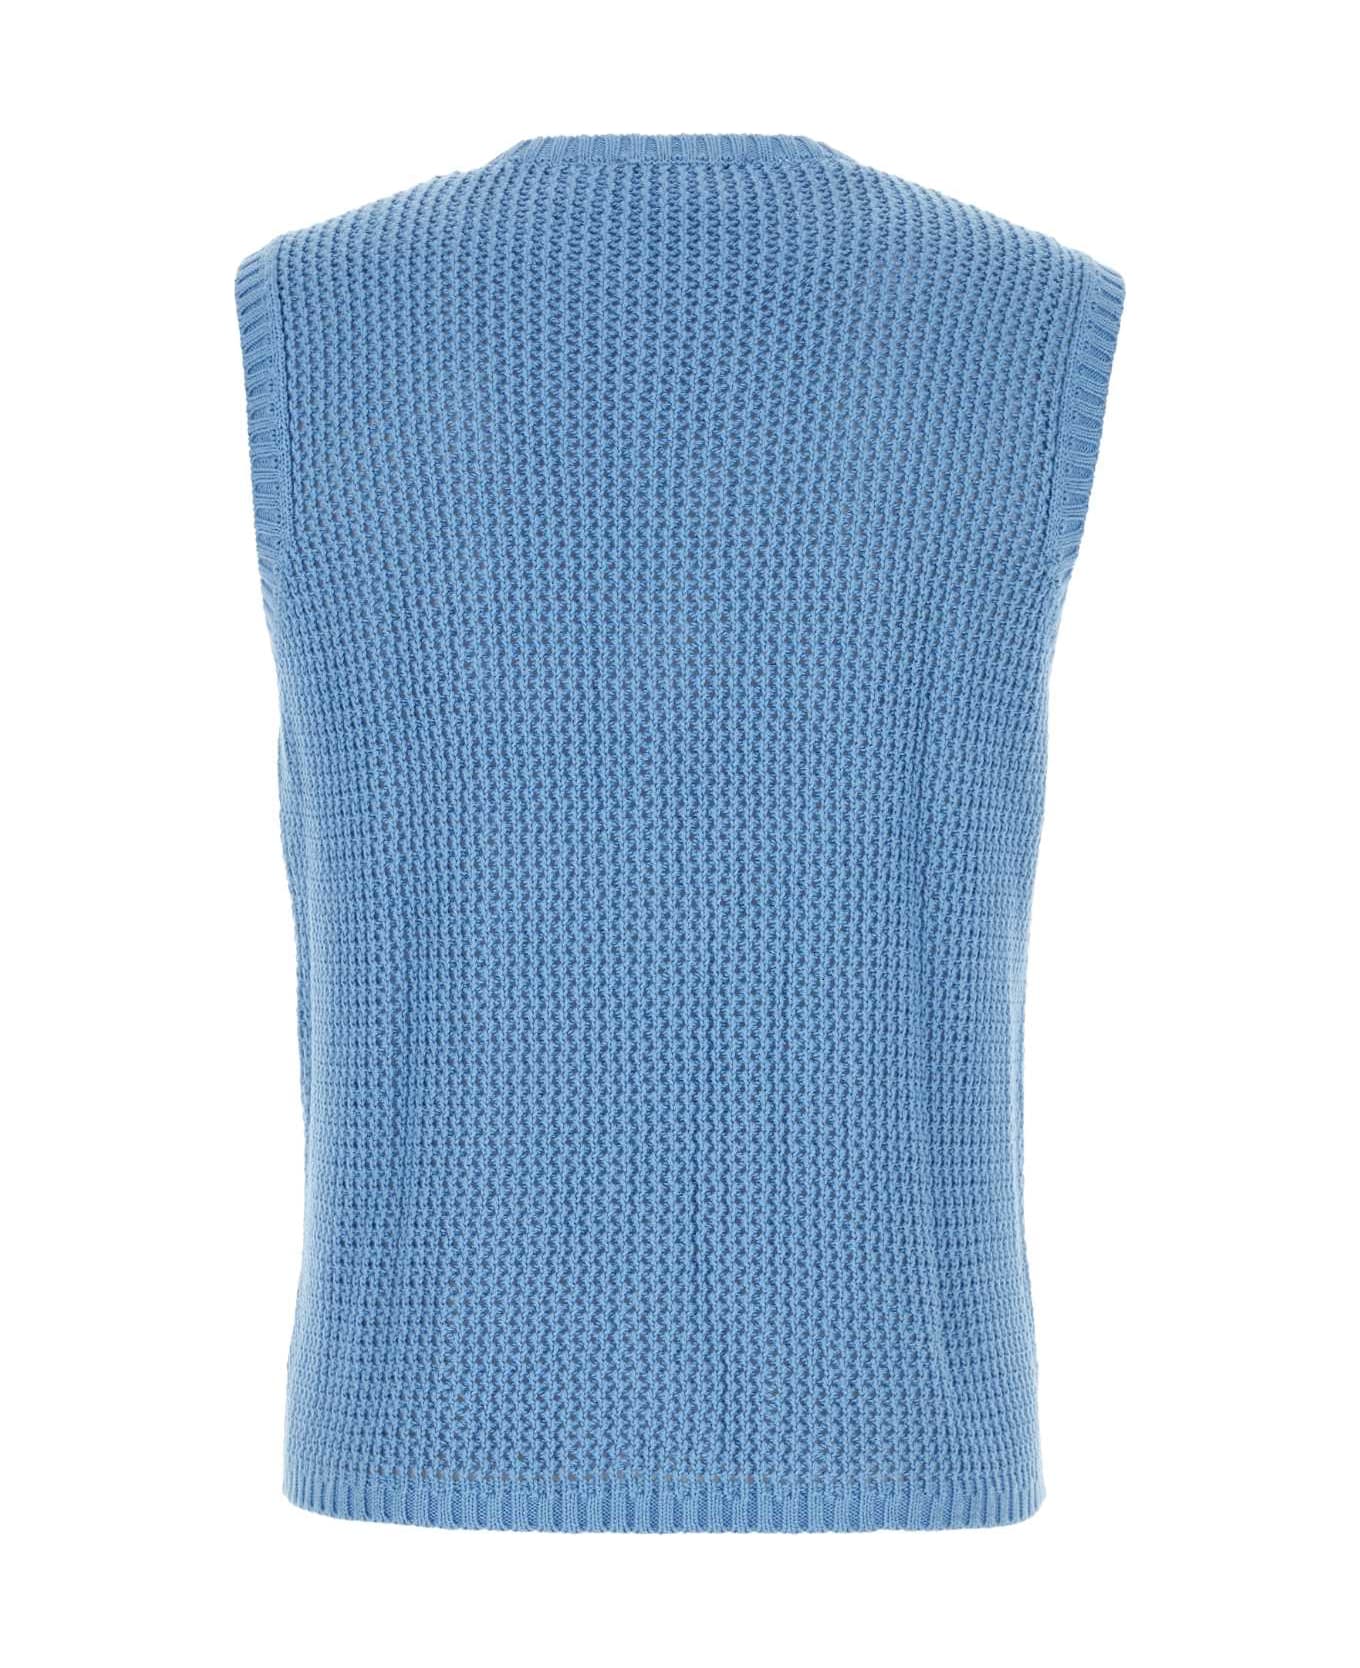 Gimaguas Cerulean Blue Cotton Bridget Vest - BLUE